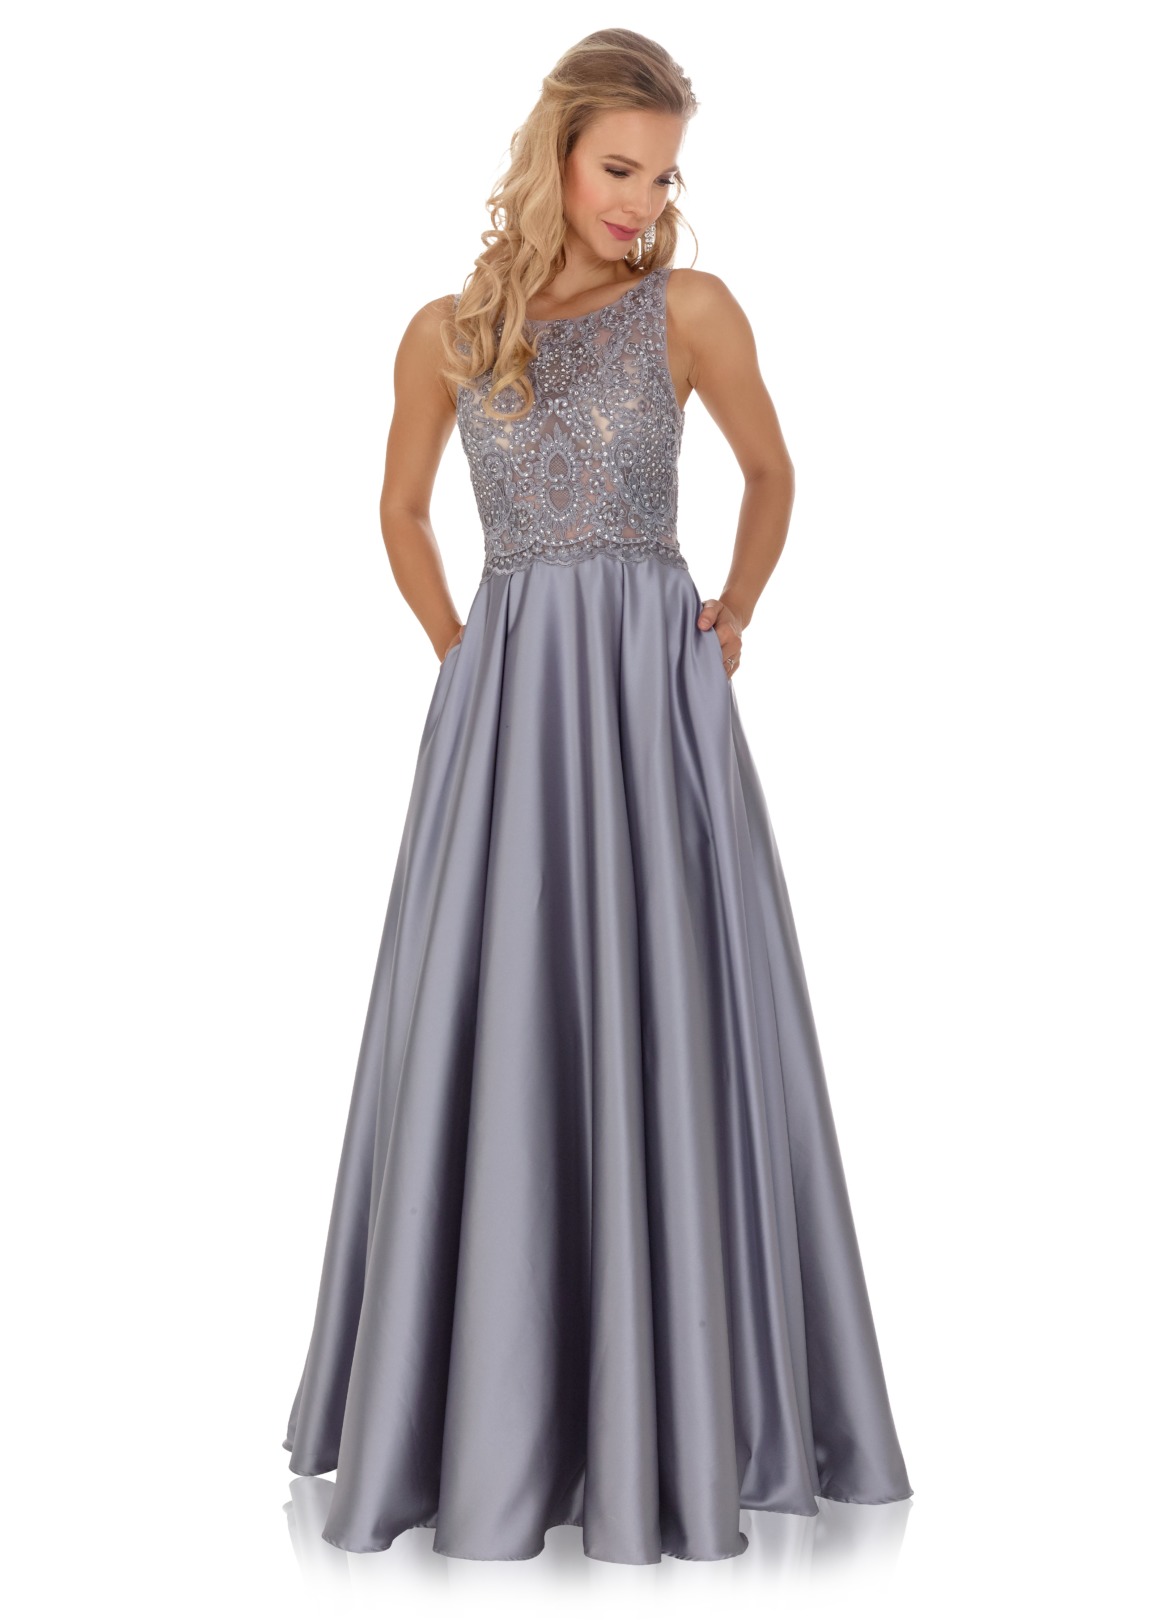 Brautjungfernkleid - Kleid für Hochzeitsgast oder Hofdamen Hofstaat Kleid silber grau elegant glitzer Satin Rock Spitze Oberteil